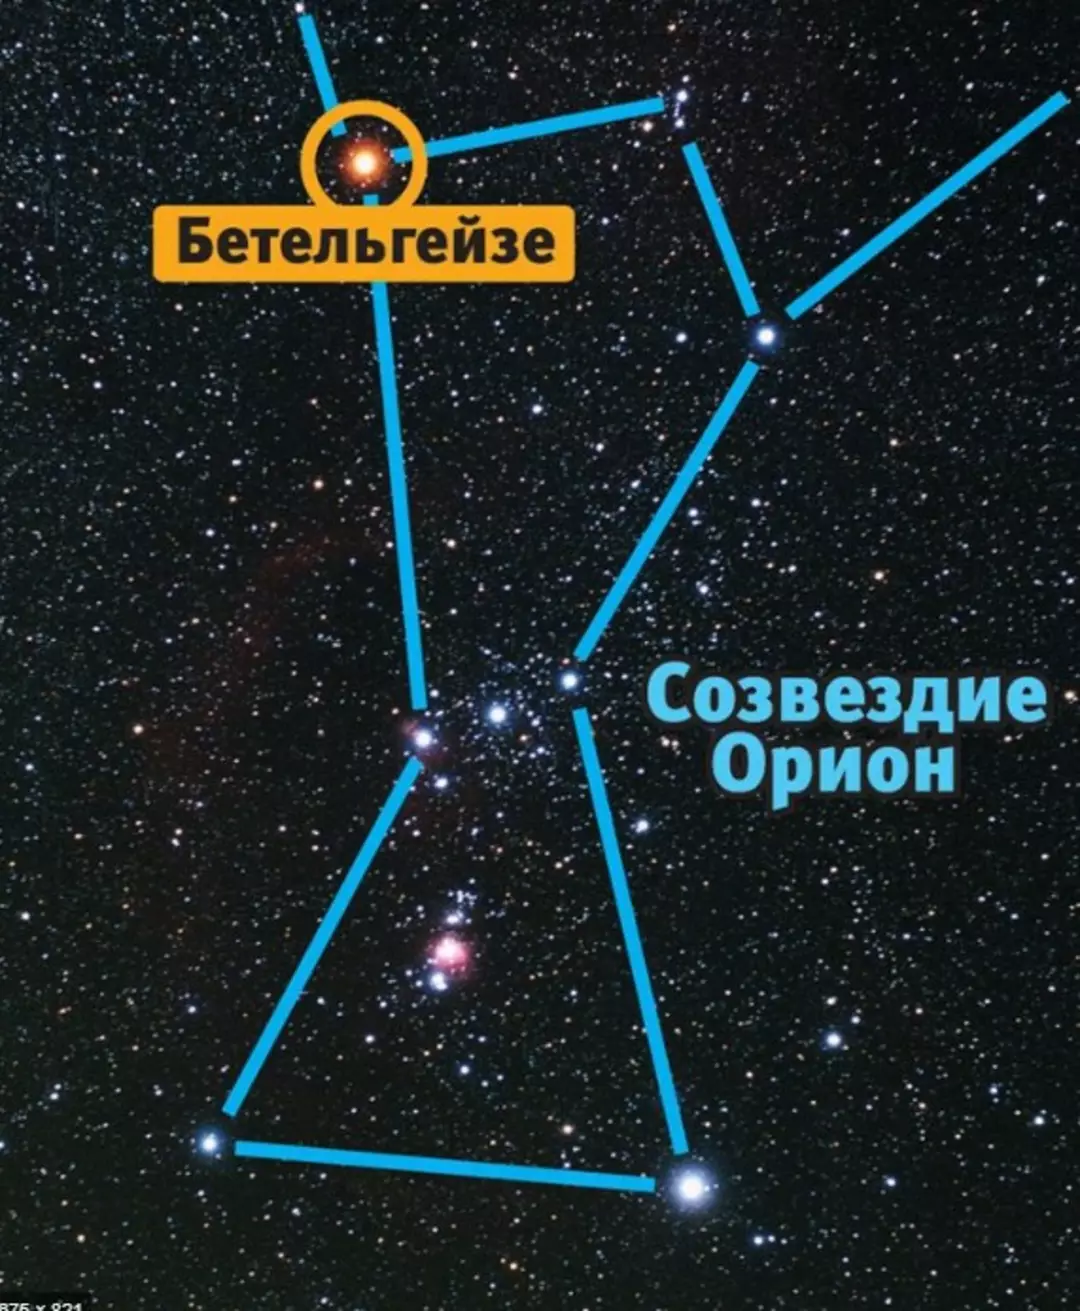 Ярчайшая звезда ориона. Звезда Бетельгейзе в созвездии Ориона. Бетельгейзе ригель Беллатрикс в созвездии Ориона. Созвездие Орион Бетельгейзе ригель. Самая яркая звезда в созвездии Орион.